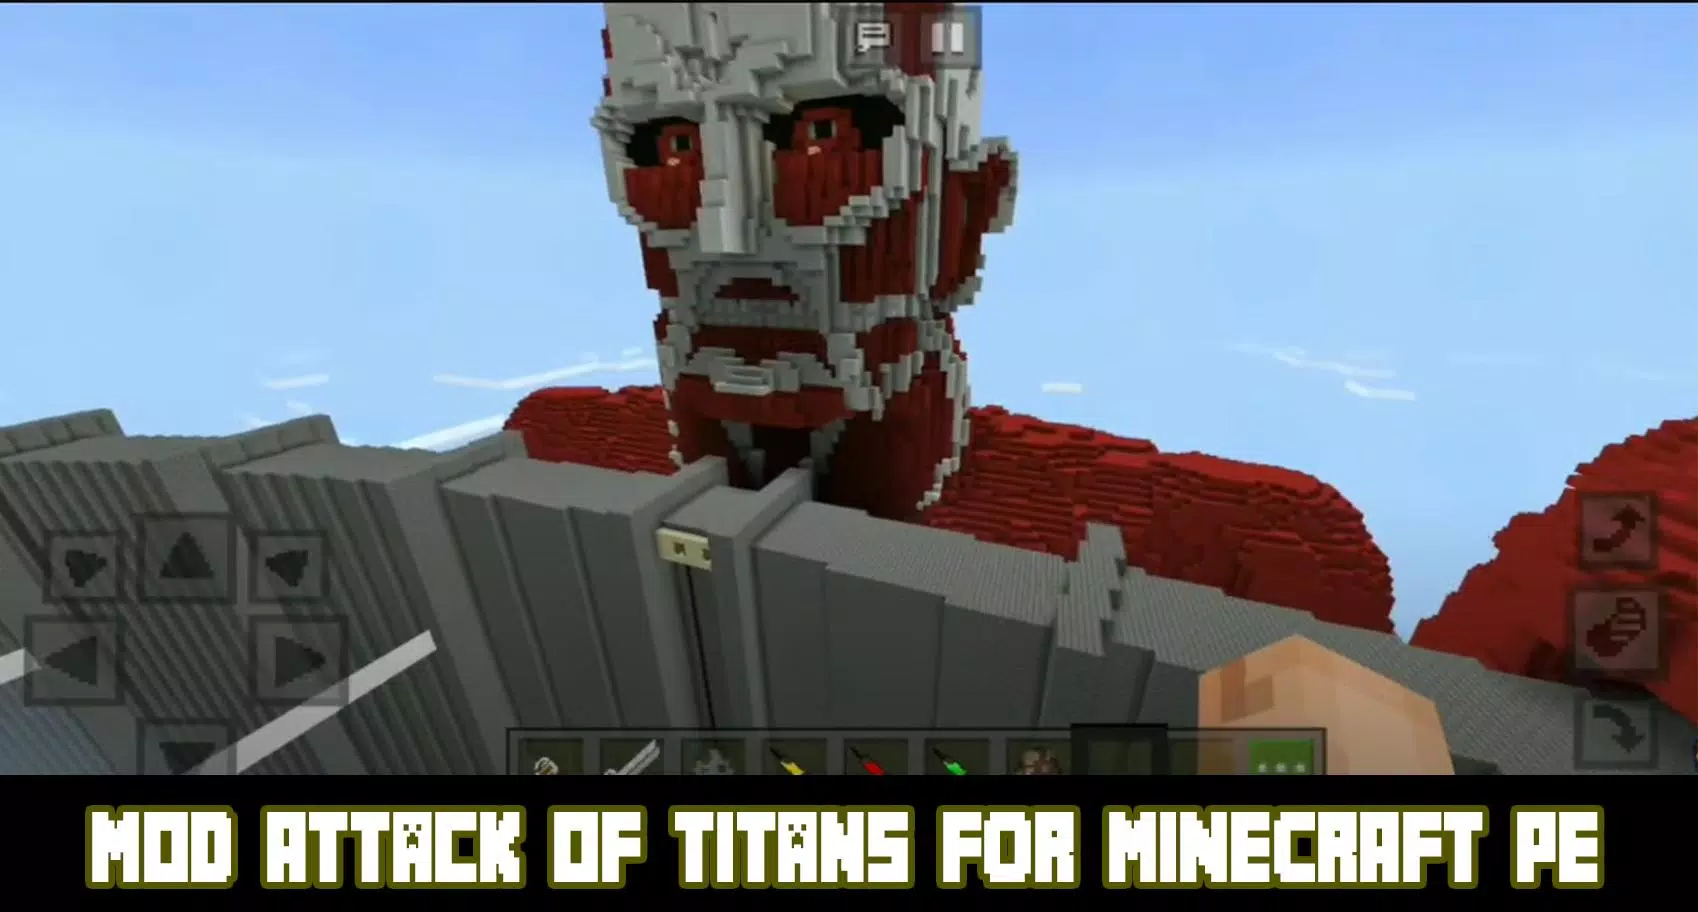 Killing Titans in Minecraft Attack on Titan Mod (Download Link in  Description) 